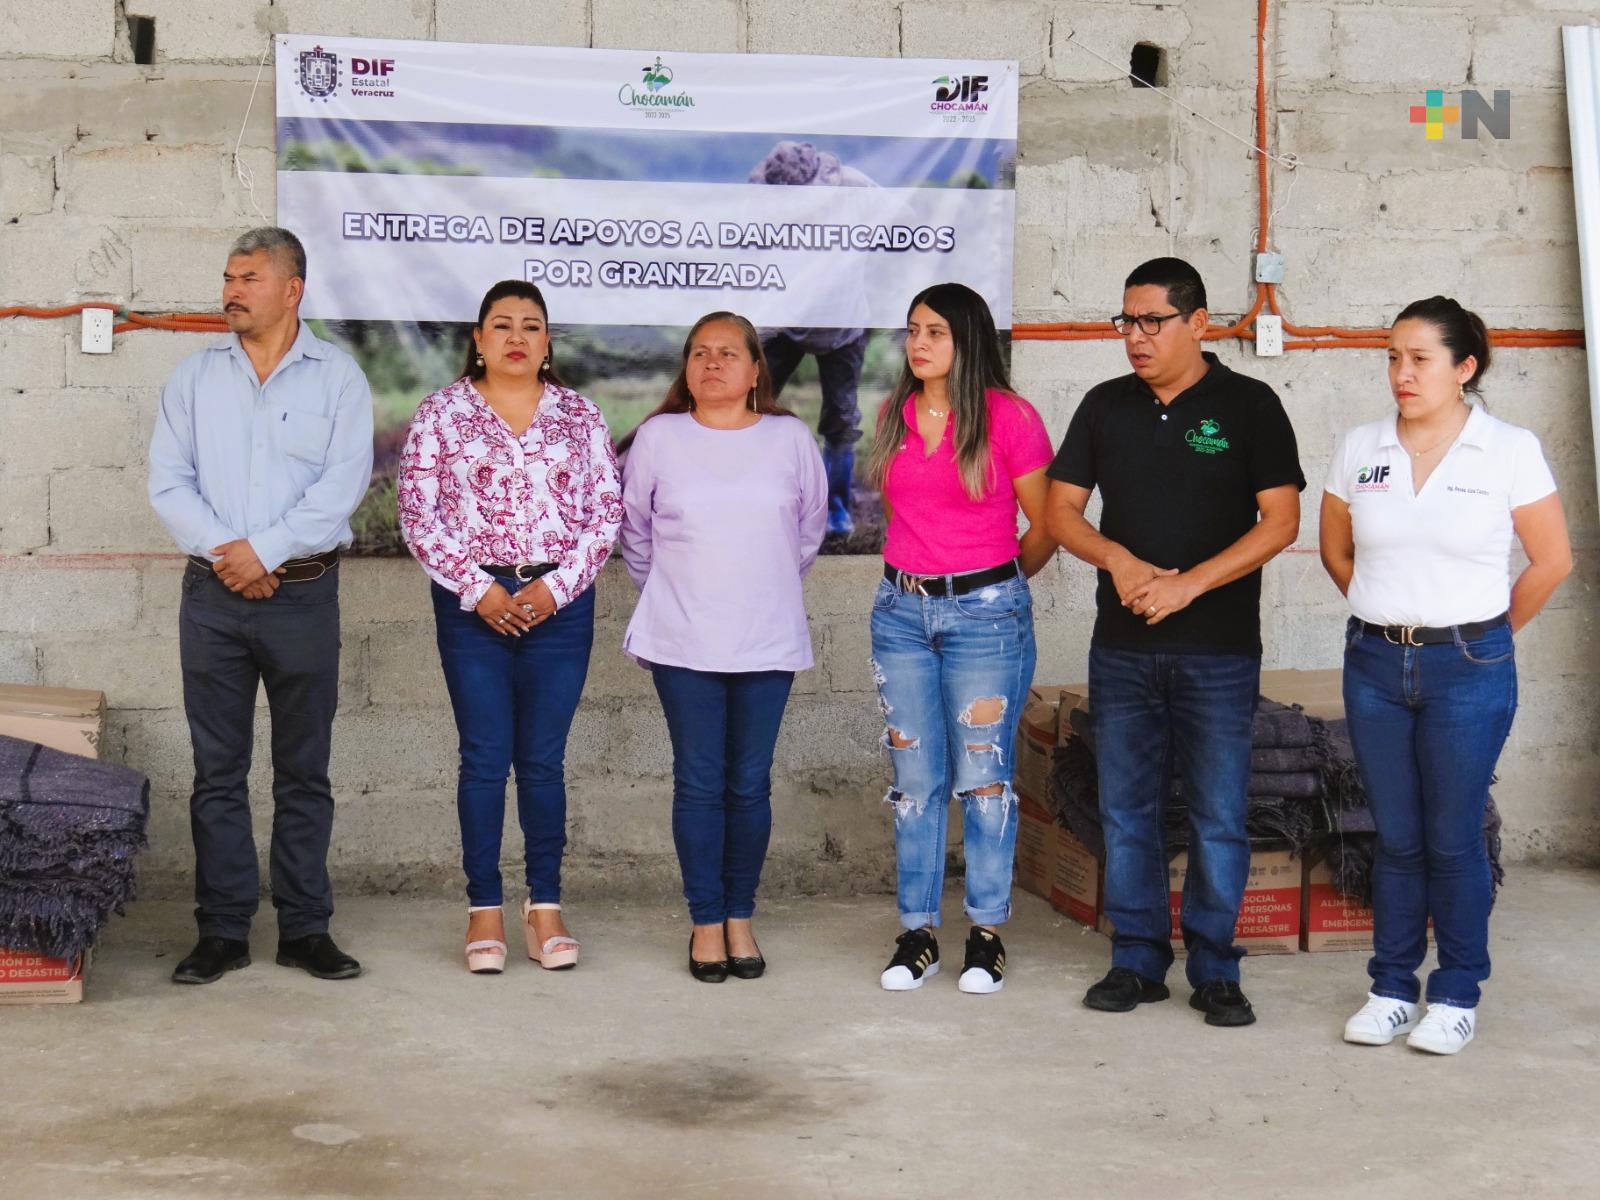 Entregan apoyos a familias afectadas por lluvias y granizada en Chocamán